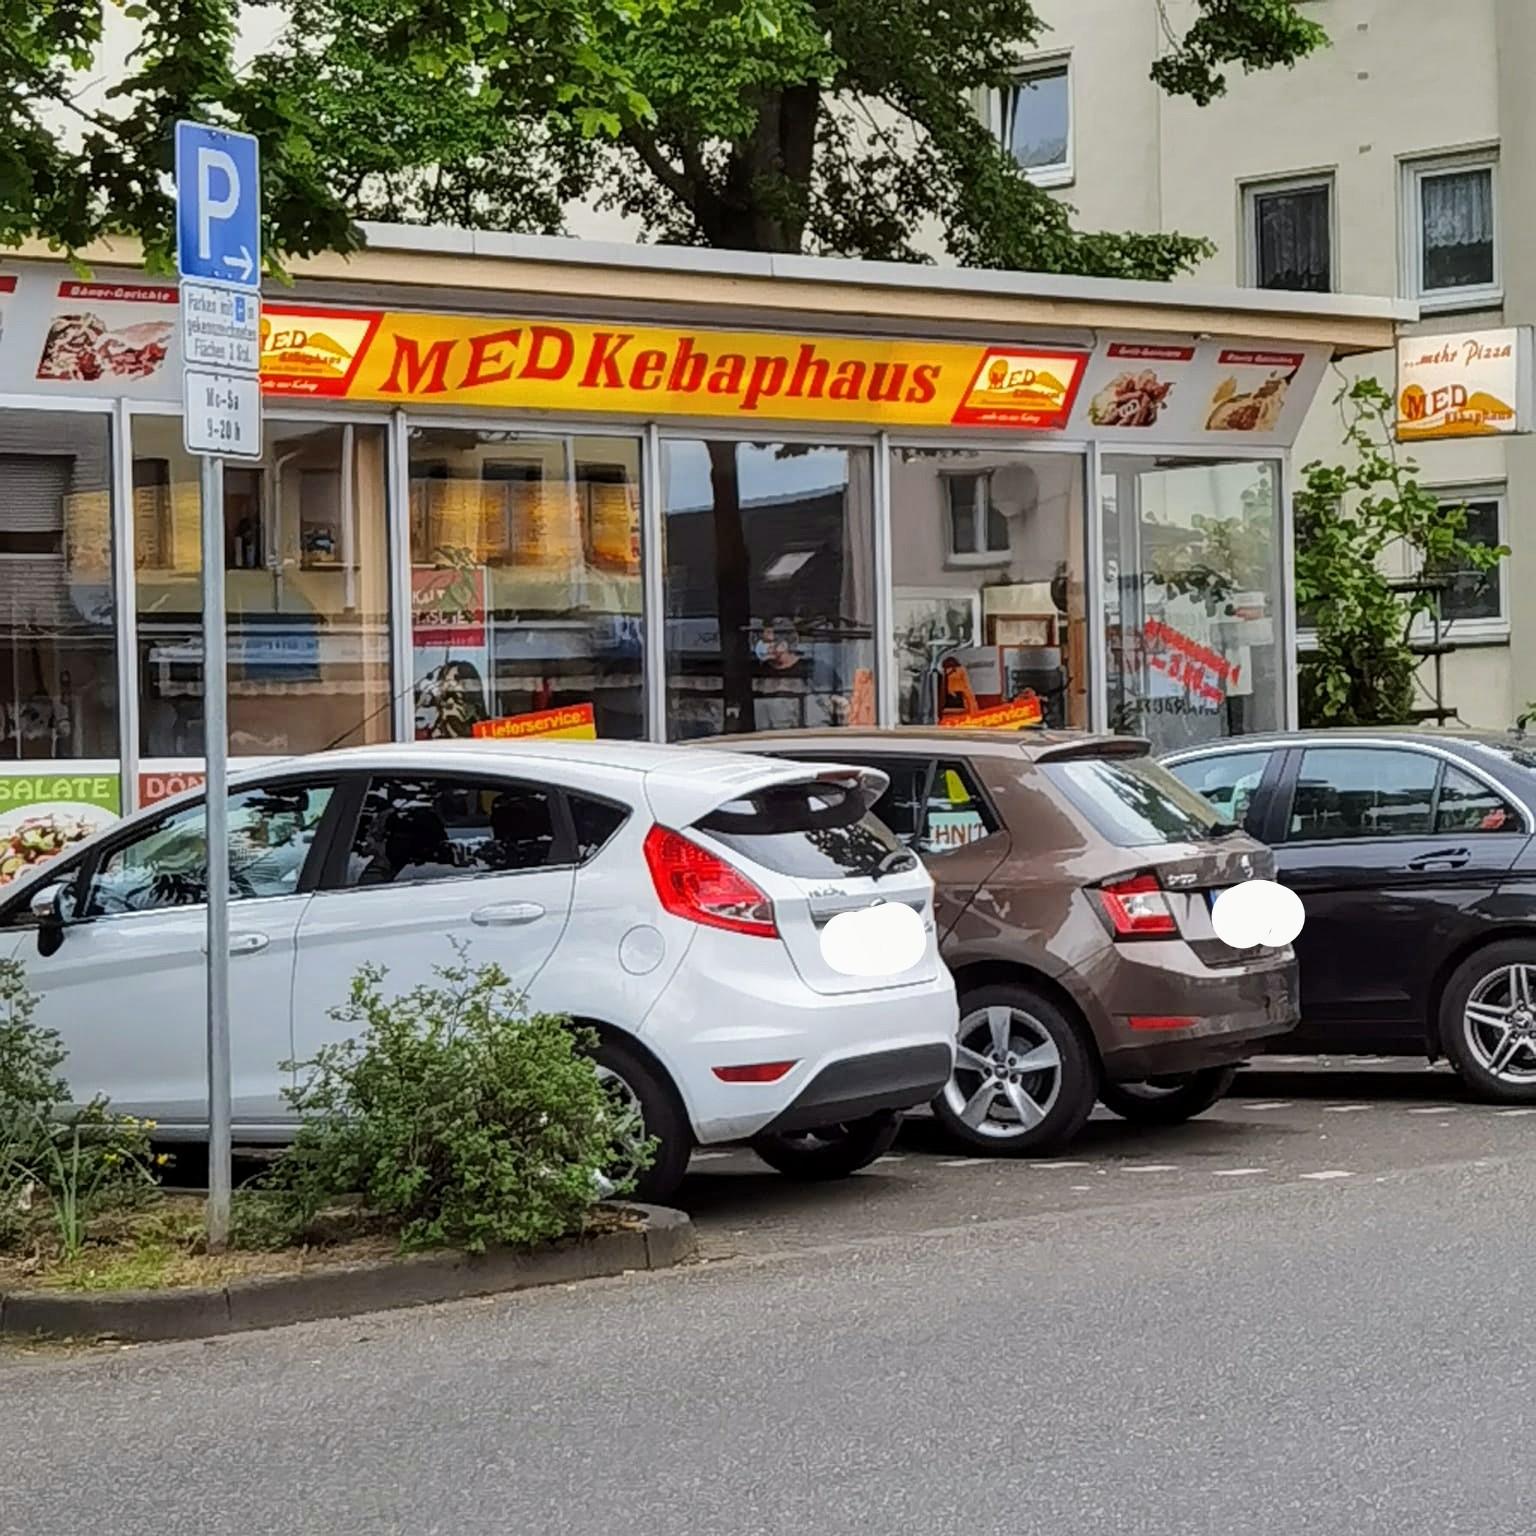 Restaurant "MED Kepabhaus" in Leverkusen